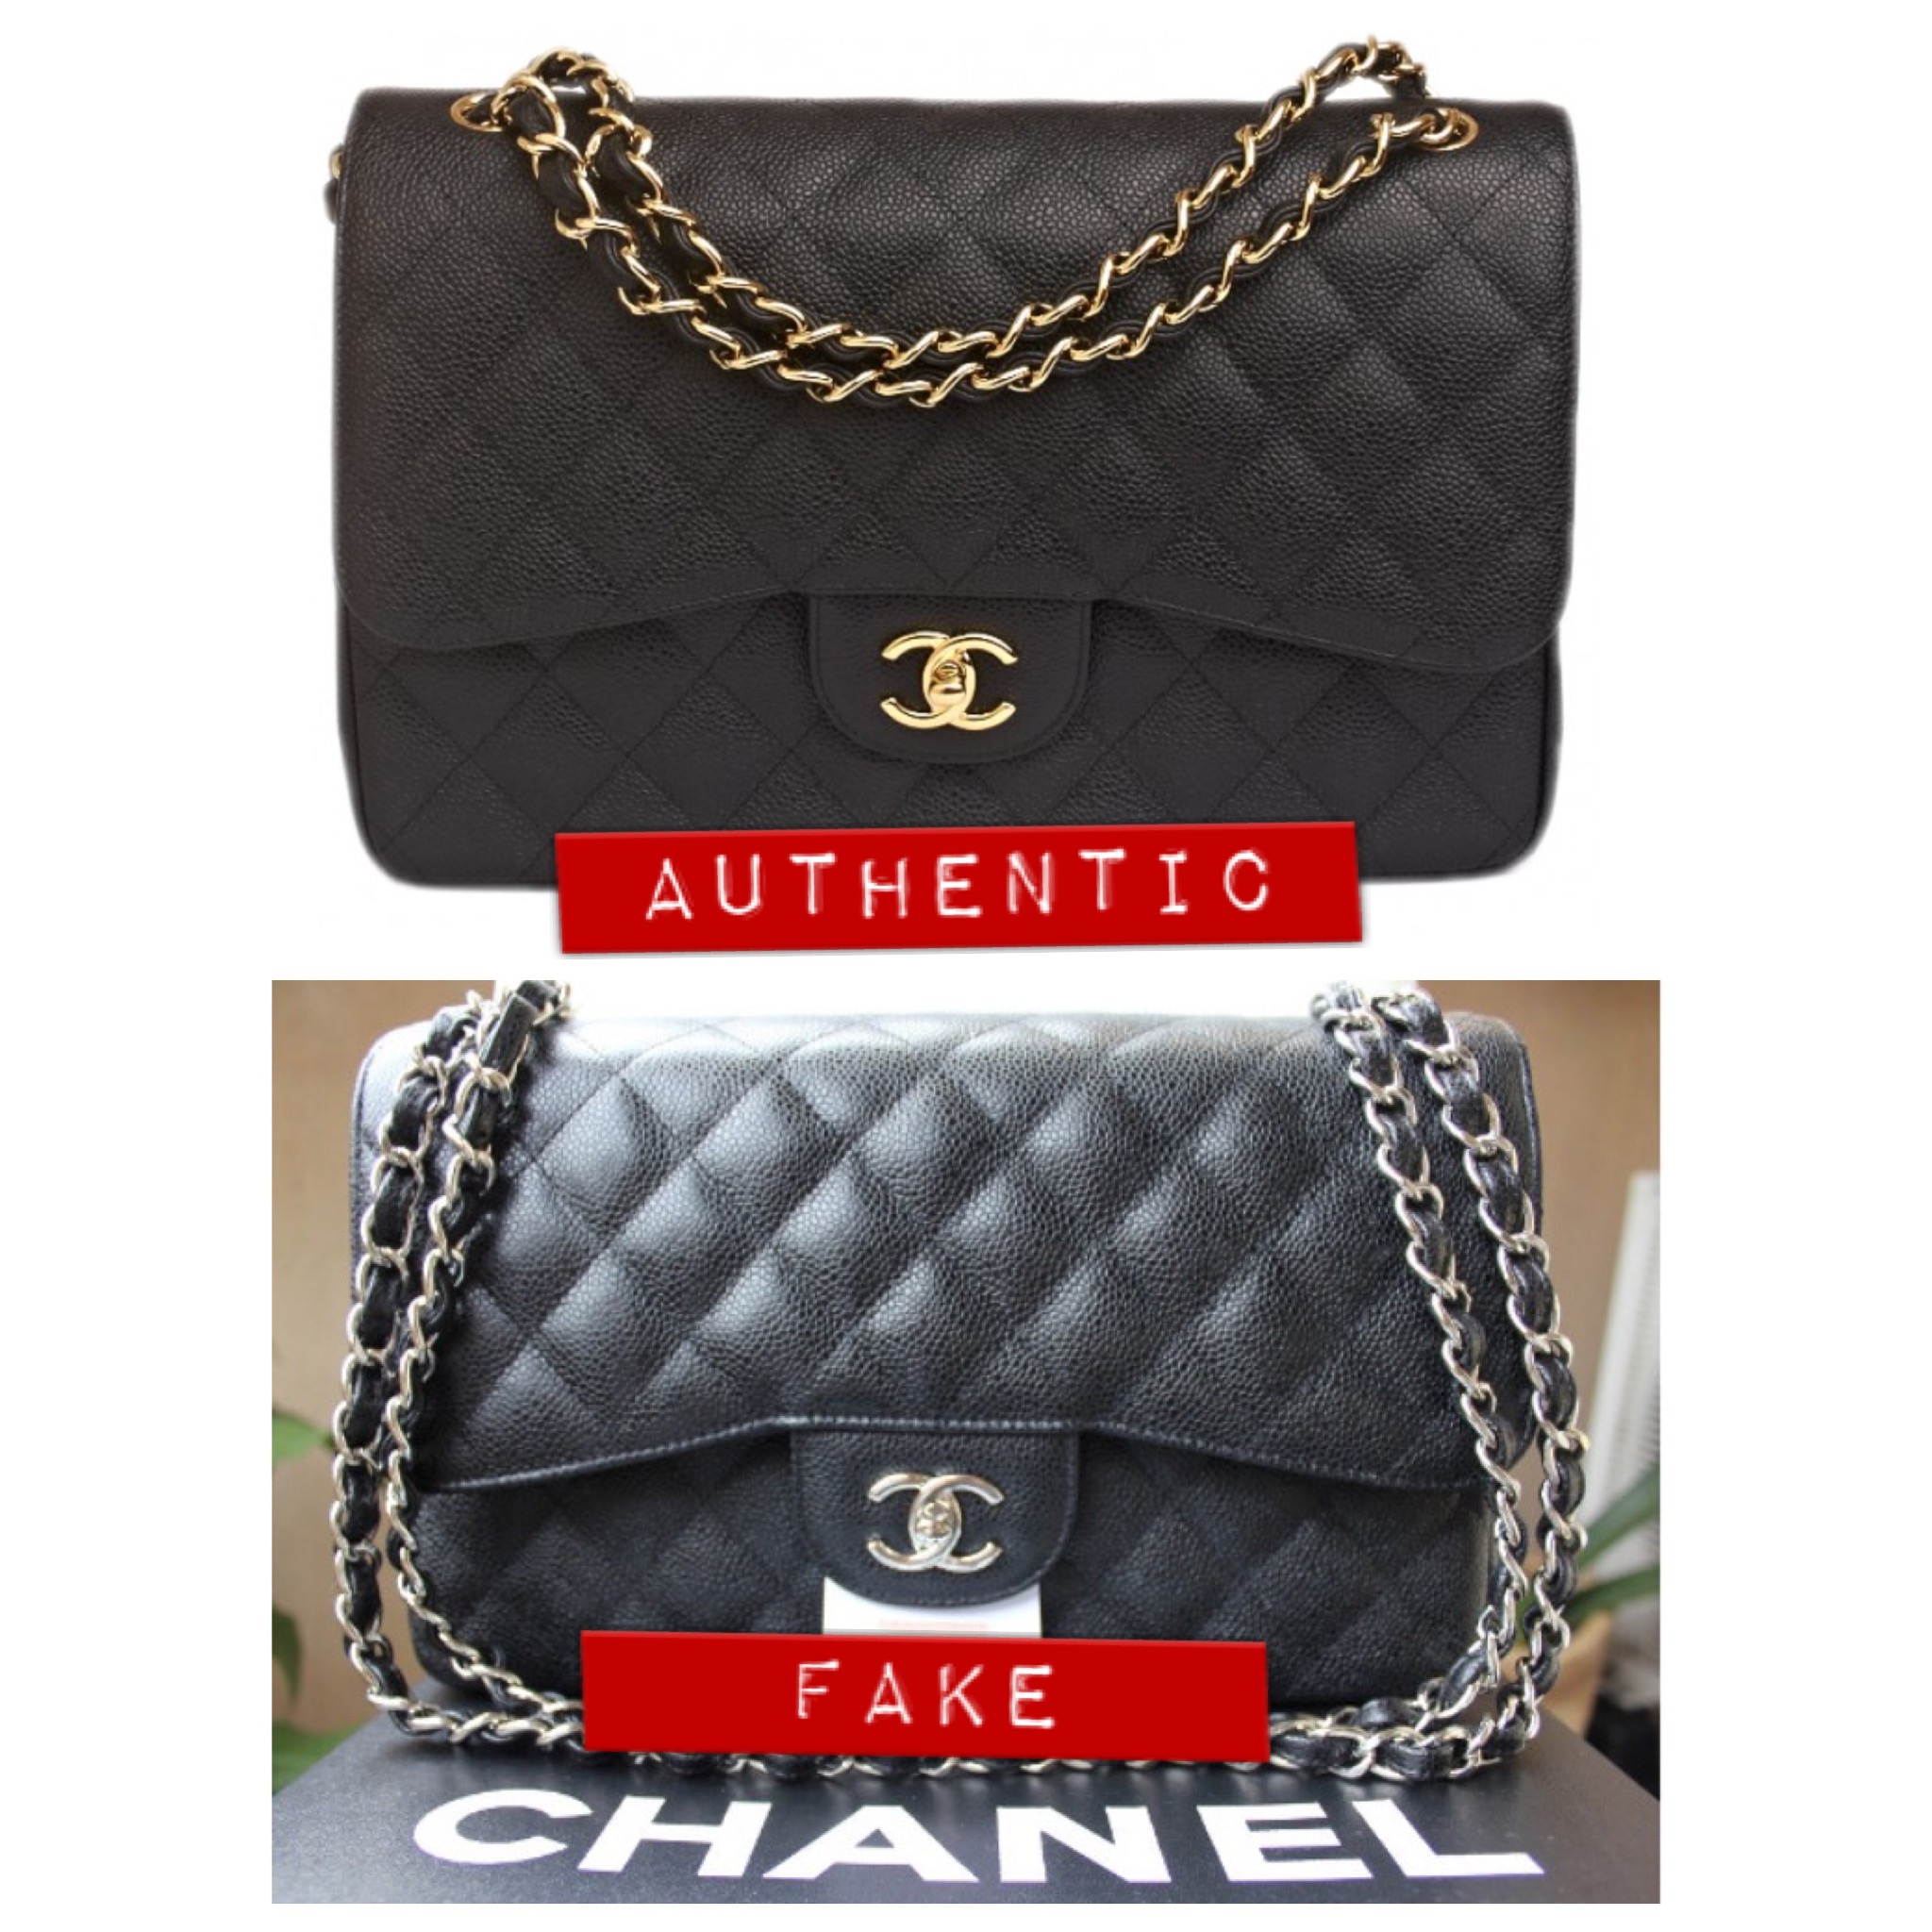 Chanel Classic Double Flap: Small vs Medium & Gold vs Silver - Lollipuff